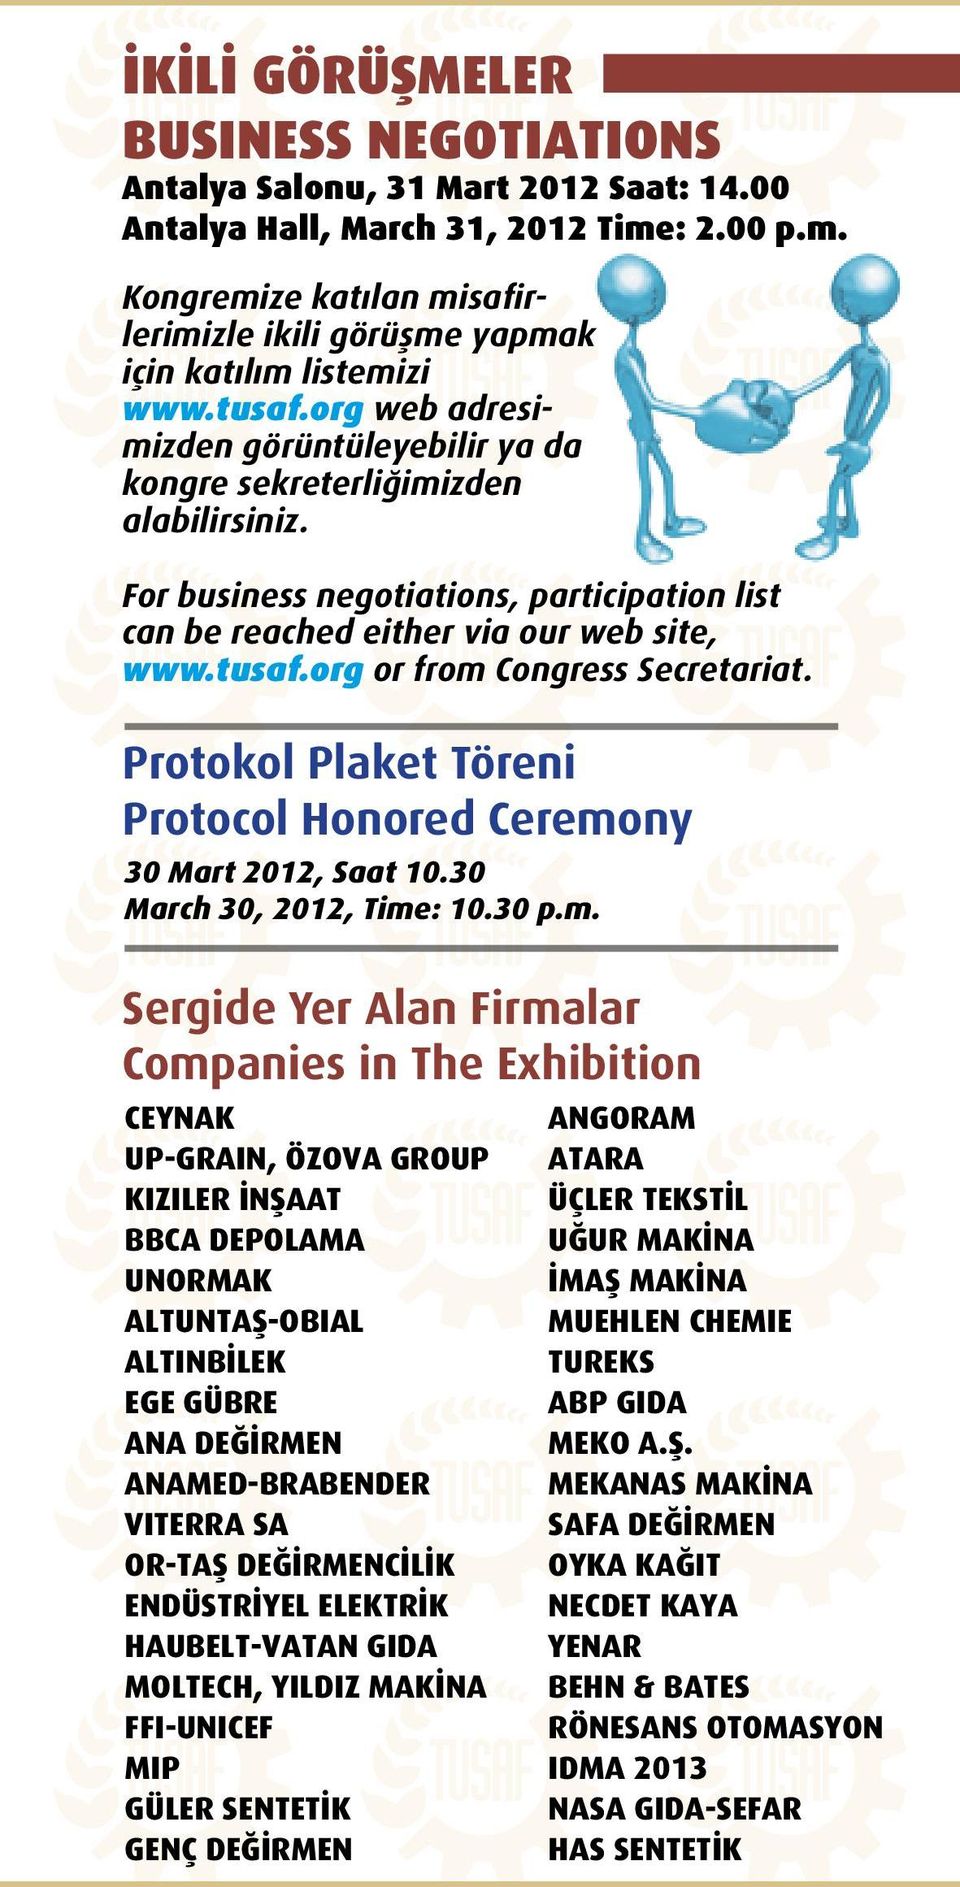 Protokol Plaket Töreni Protocol Honored Ceremo